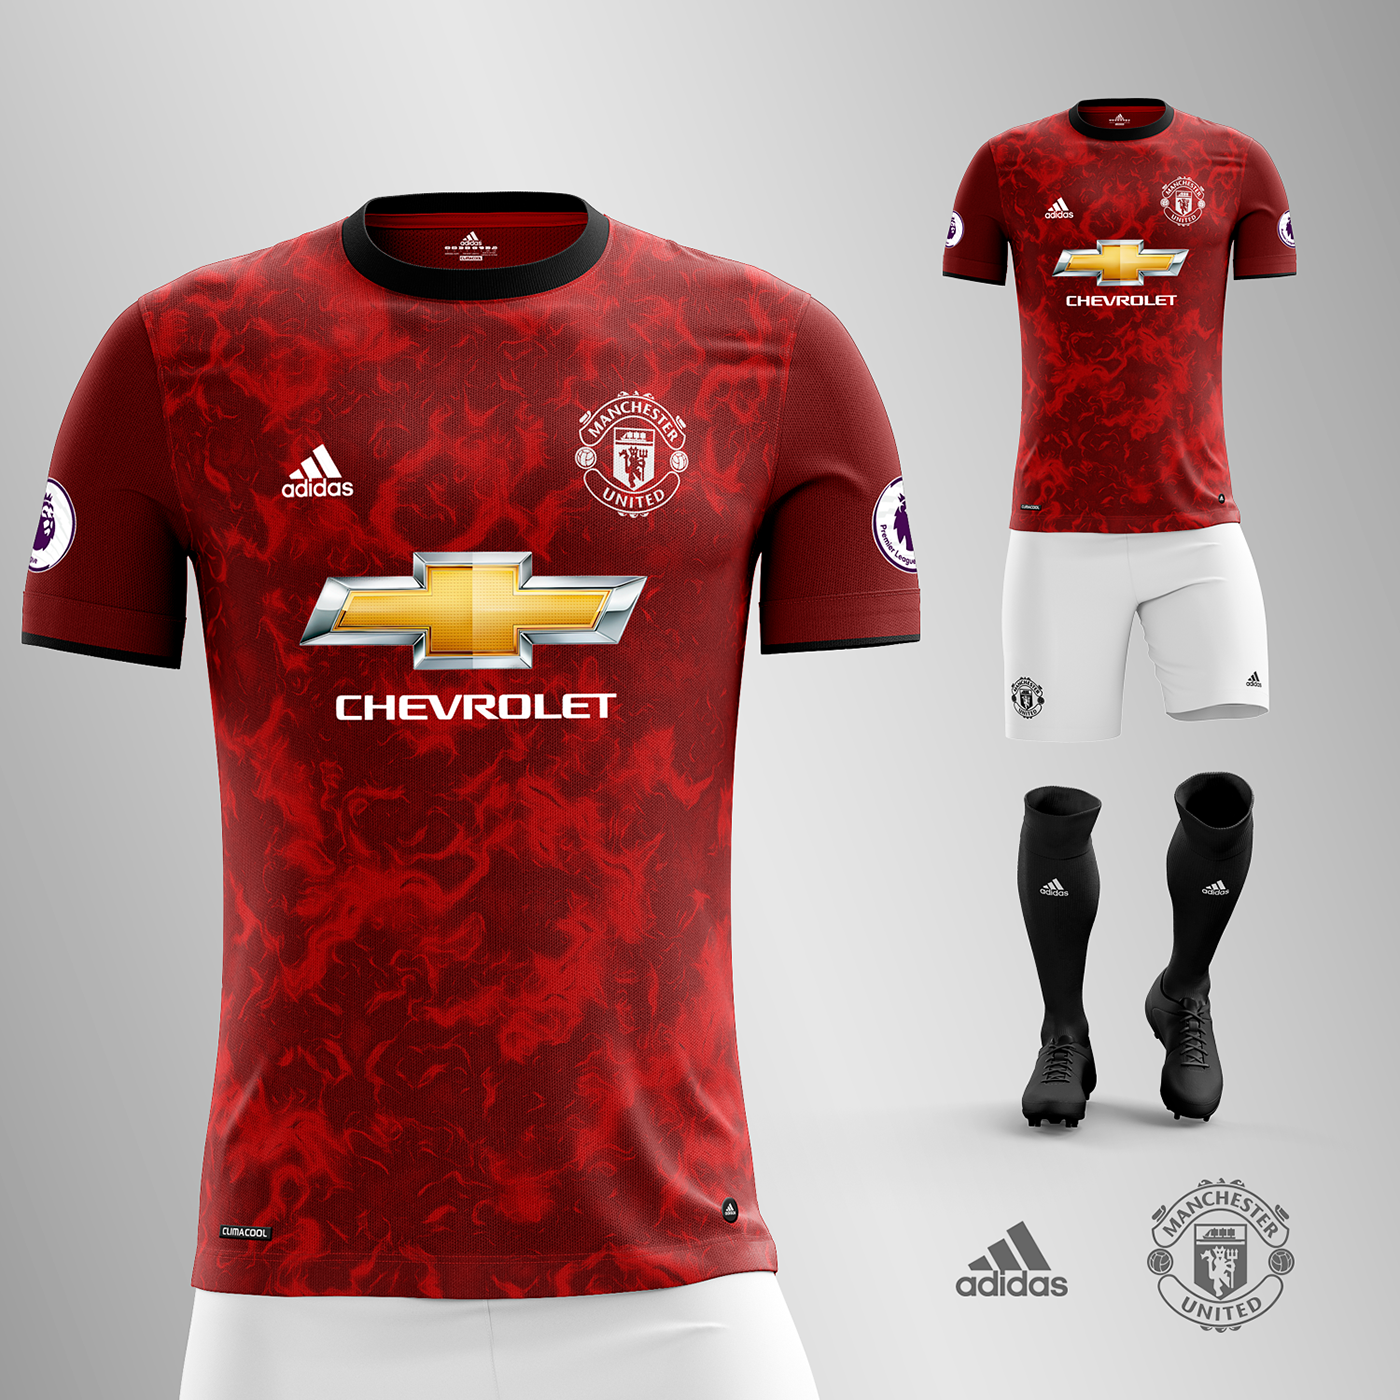 New Man United Kit 21/22 / Manchester United 21-22 Home Kit Leaked